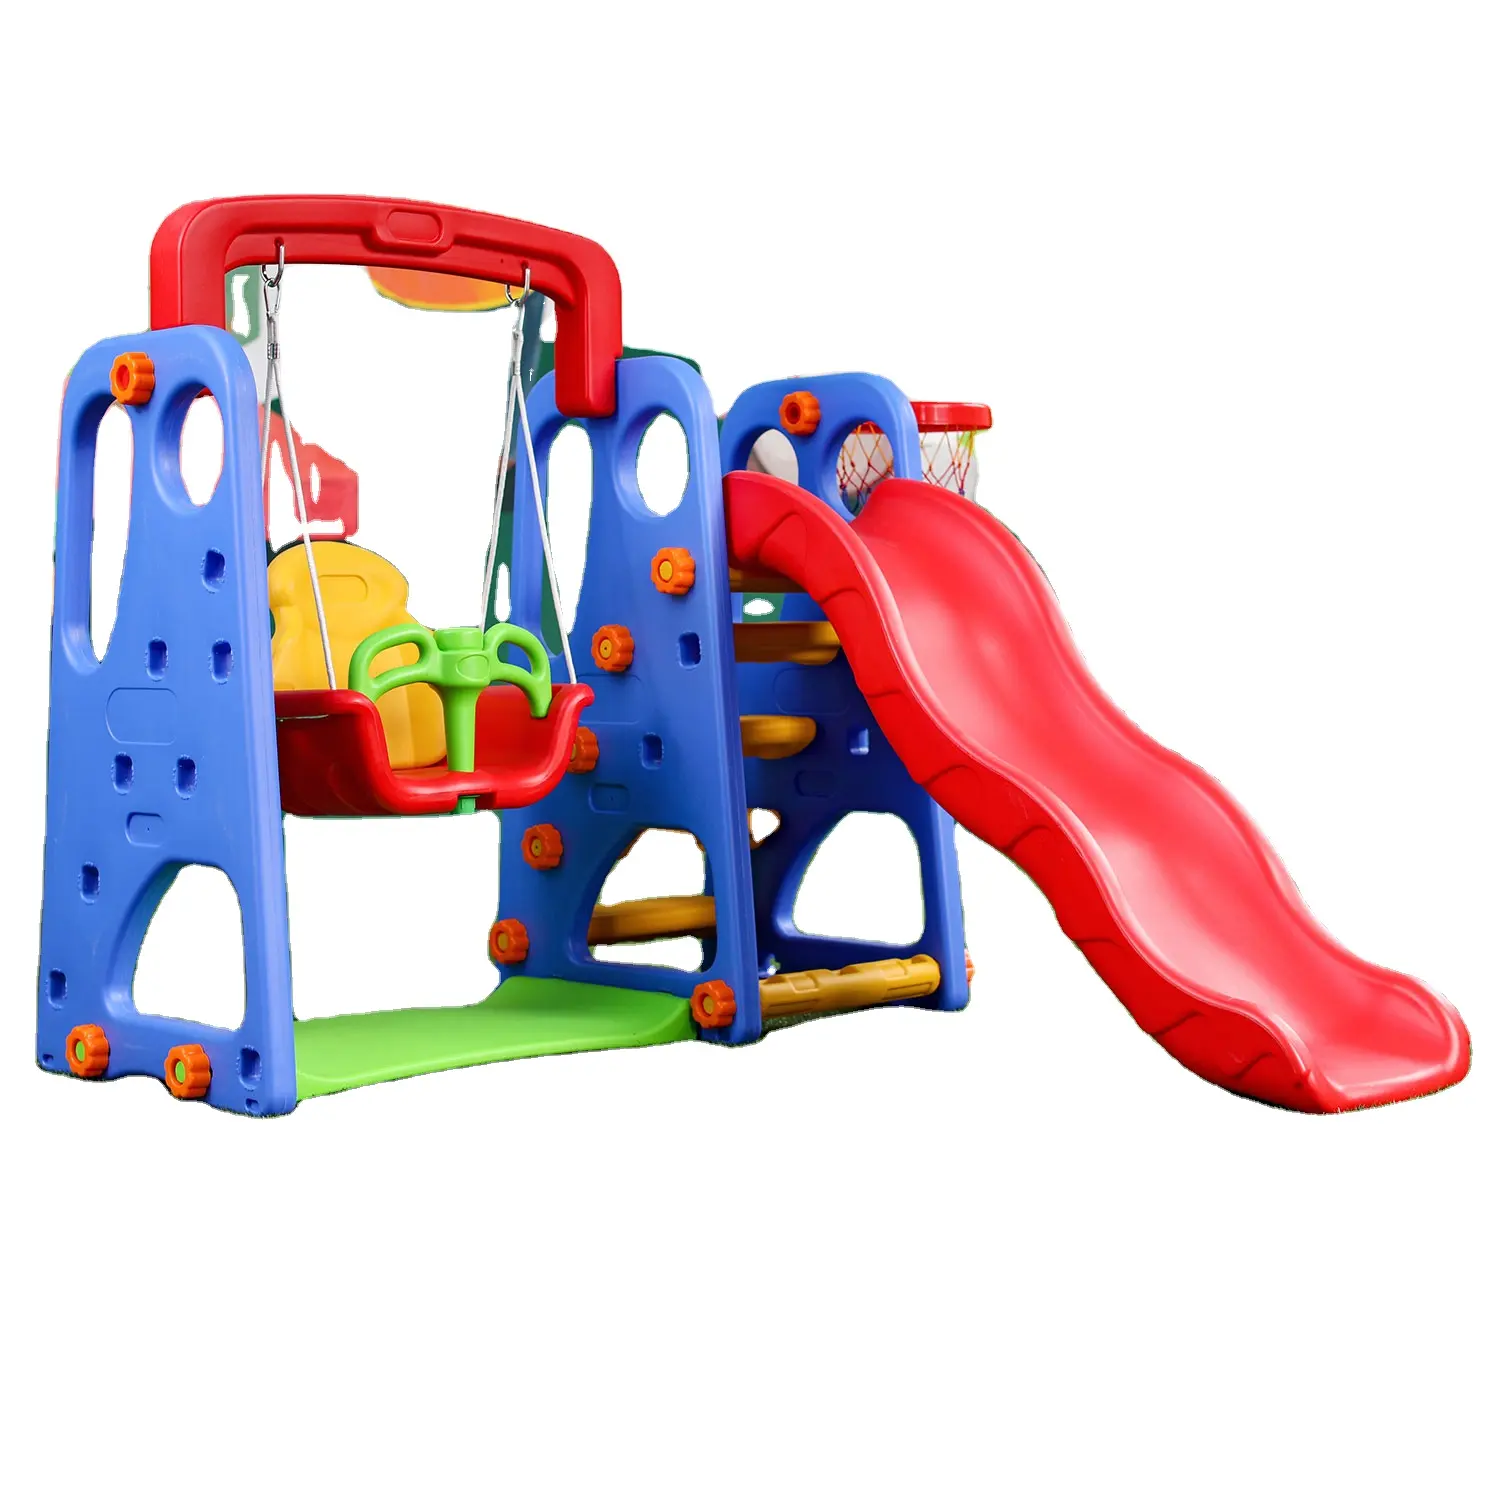 Factory Supply Attractive Price Children Kids Slide And Swing Set Plastic Indoor